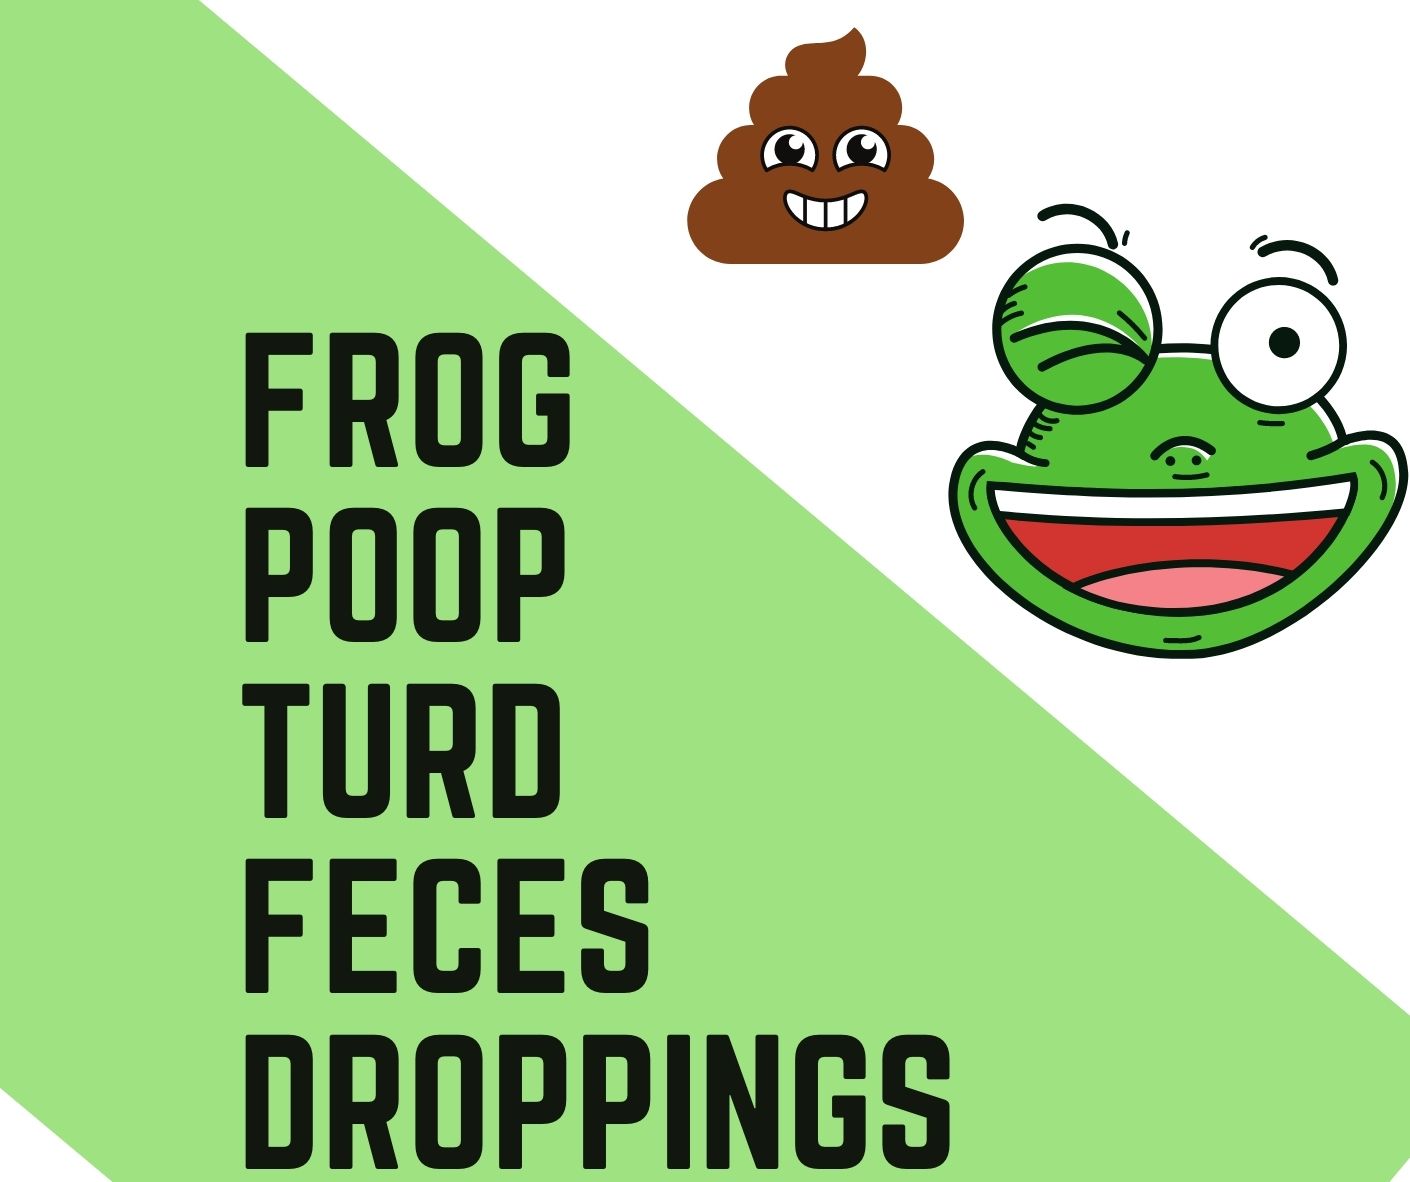 frog poop turd droppings